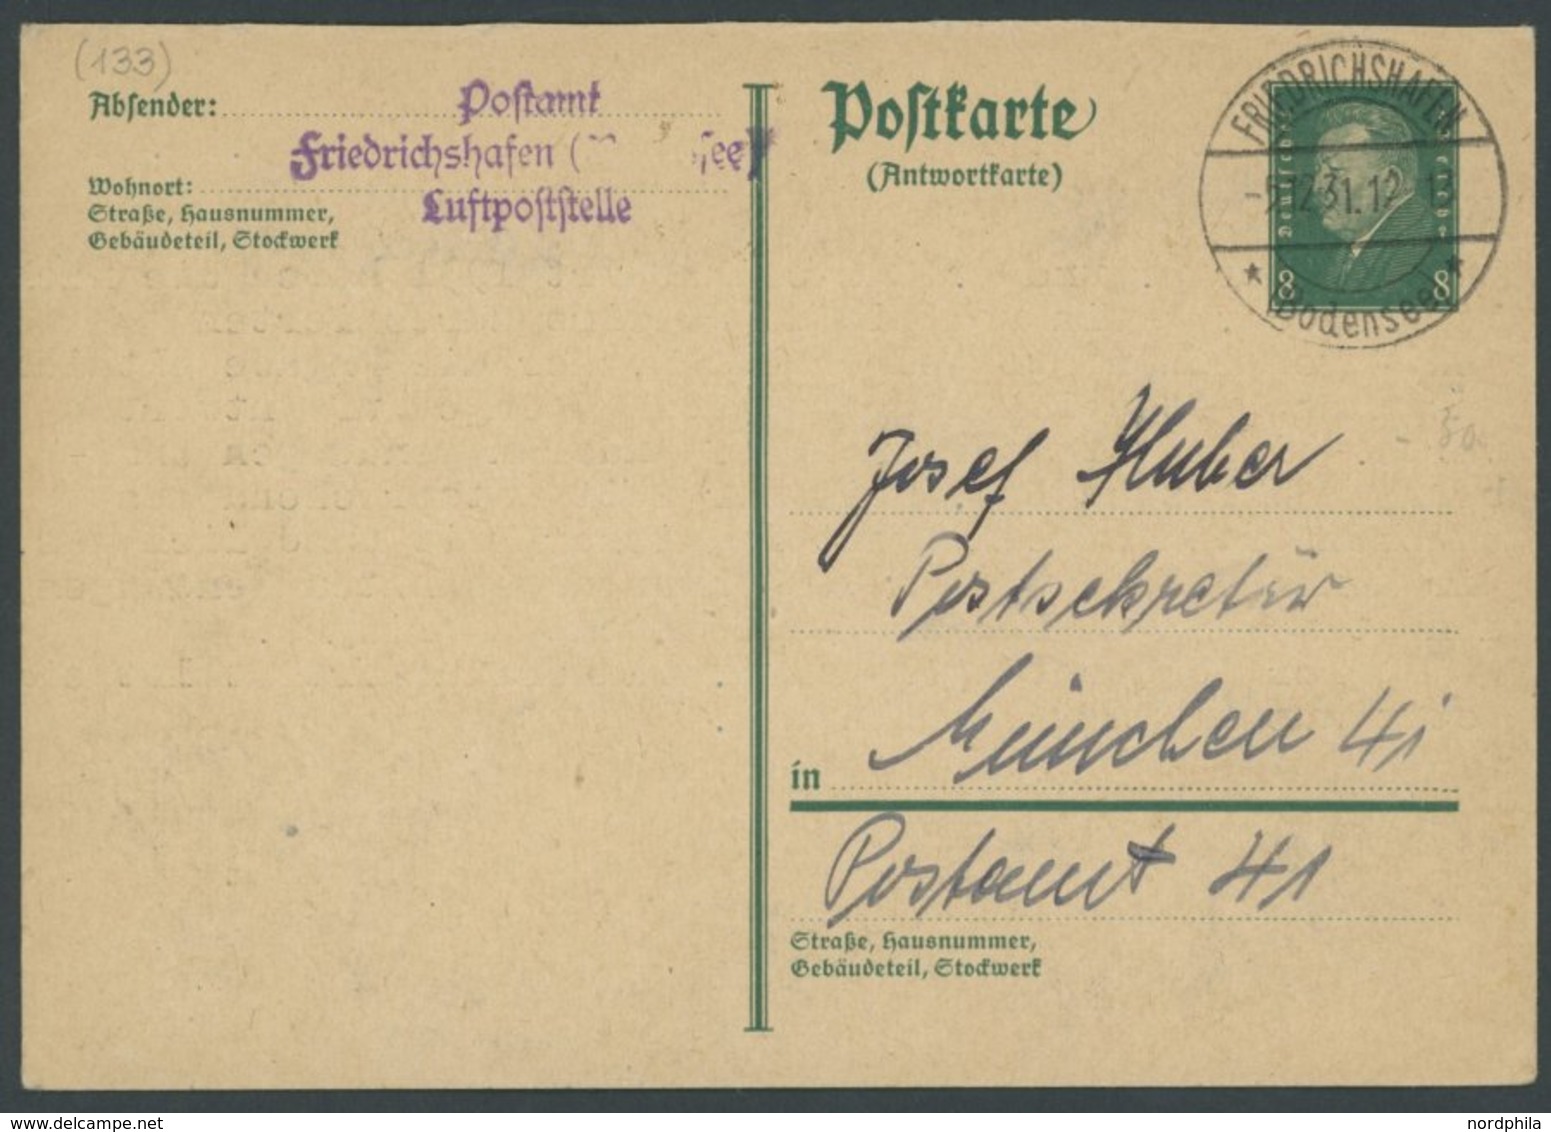 ZEPPELINPOST 1931, Friedrichshafen Luftpostelle: Antwortkarte Mit Ablehnung Einer Nachträglichen Anbringung Des Zeppelin - Zeppelins